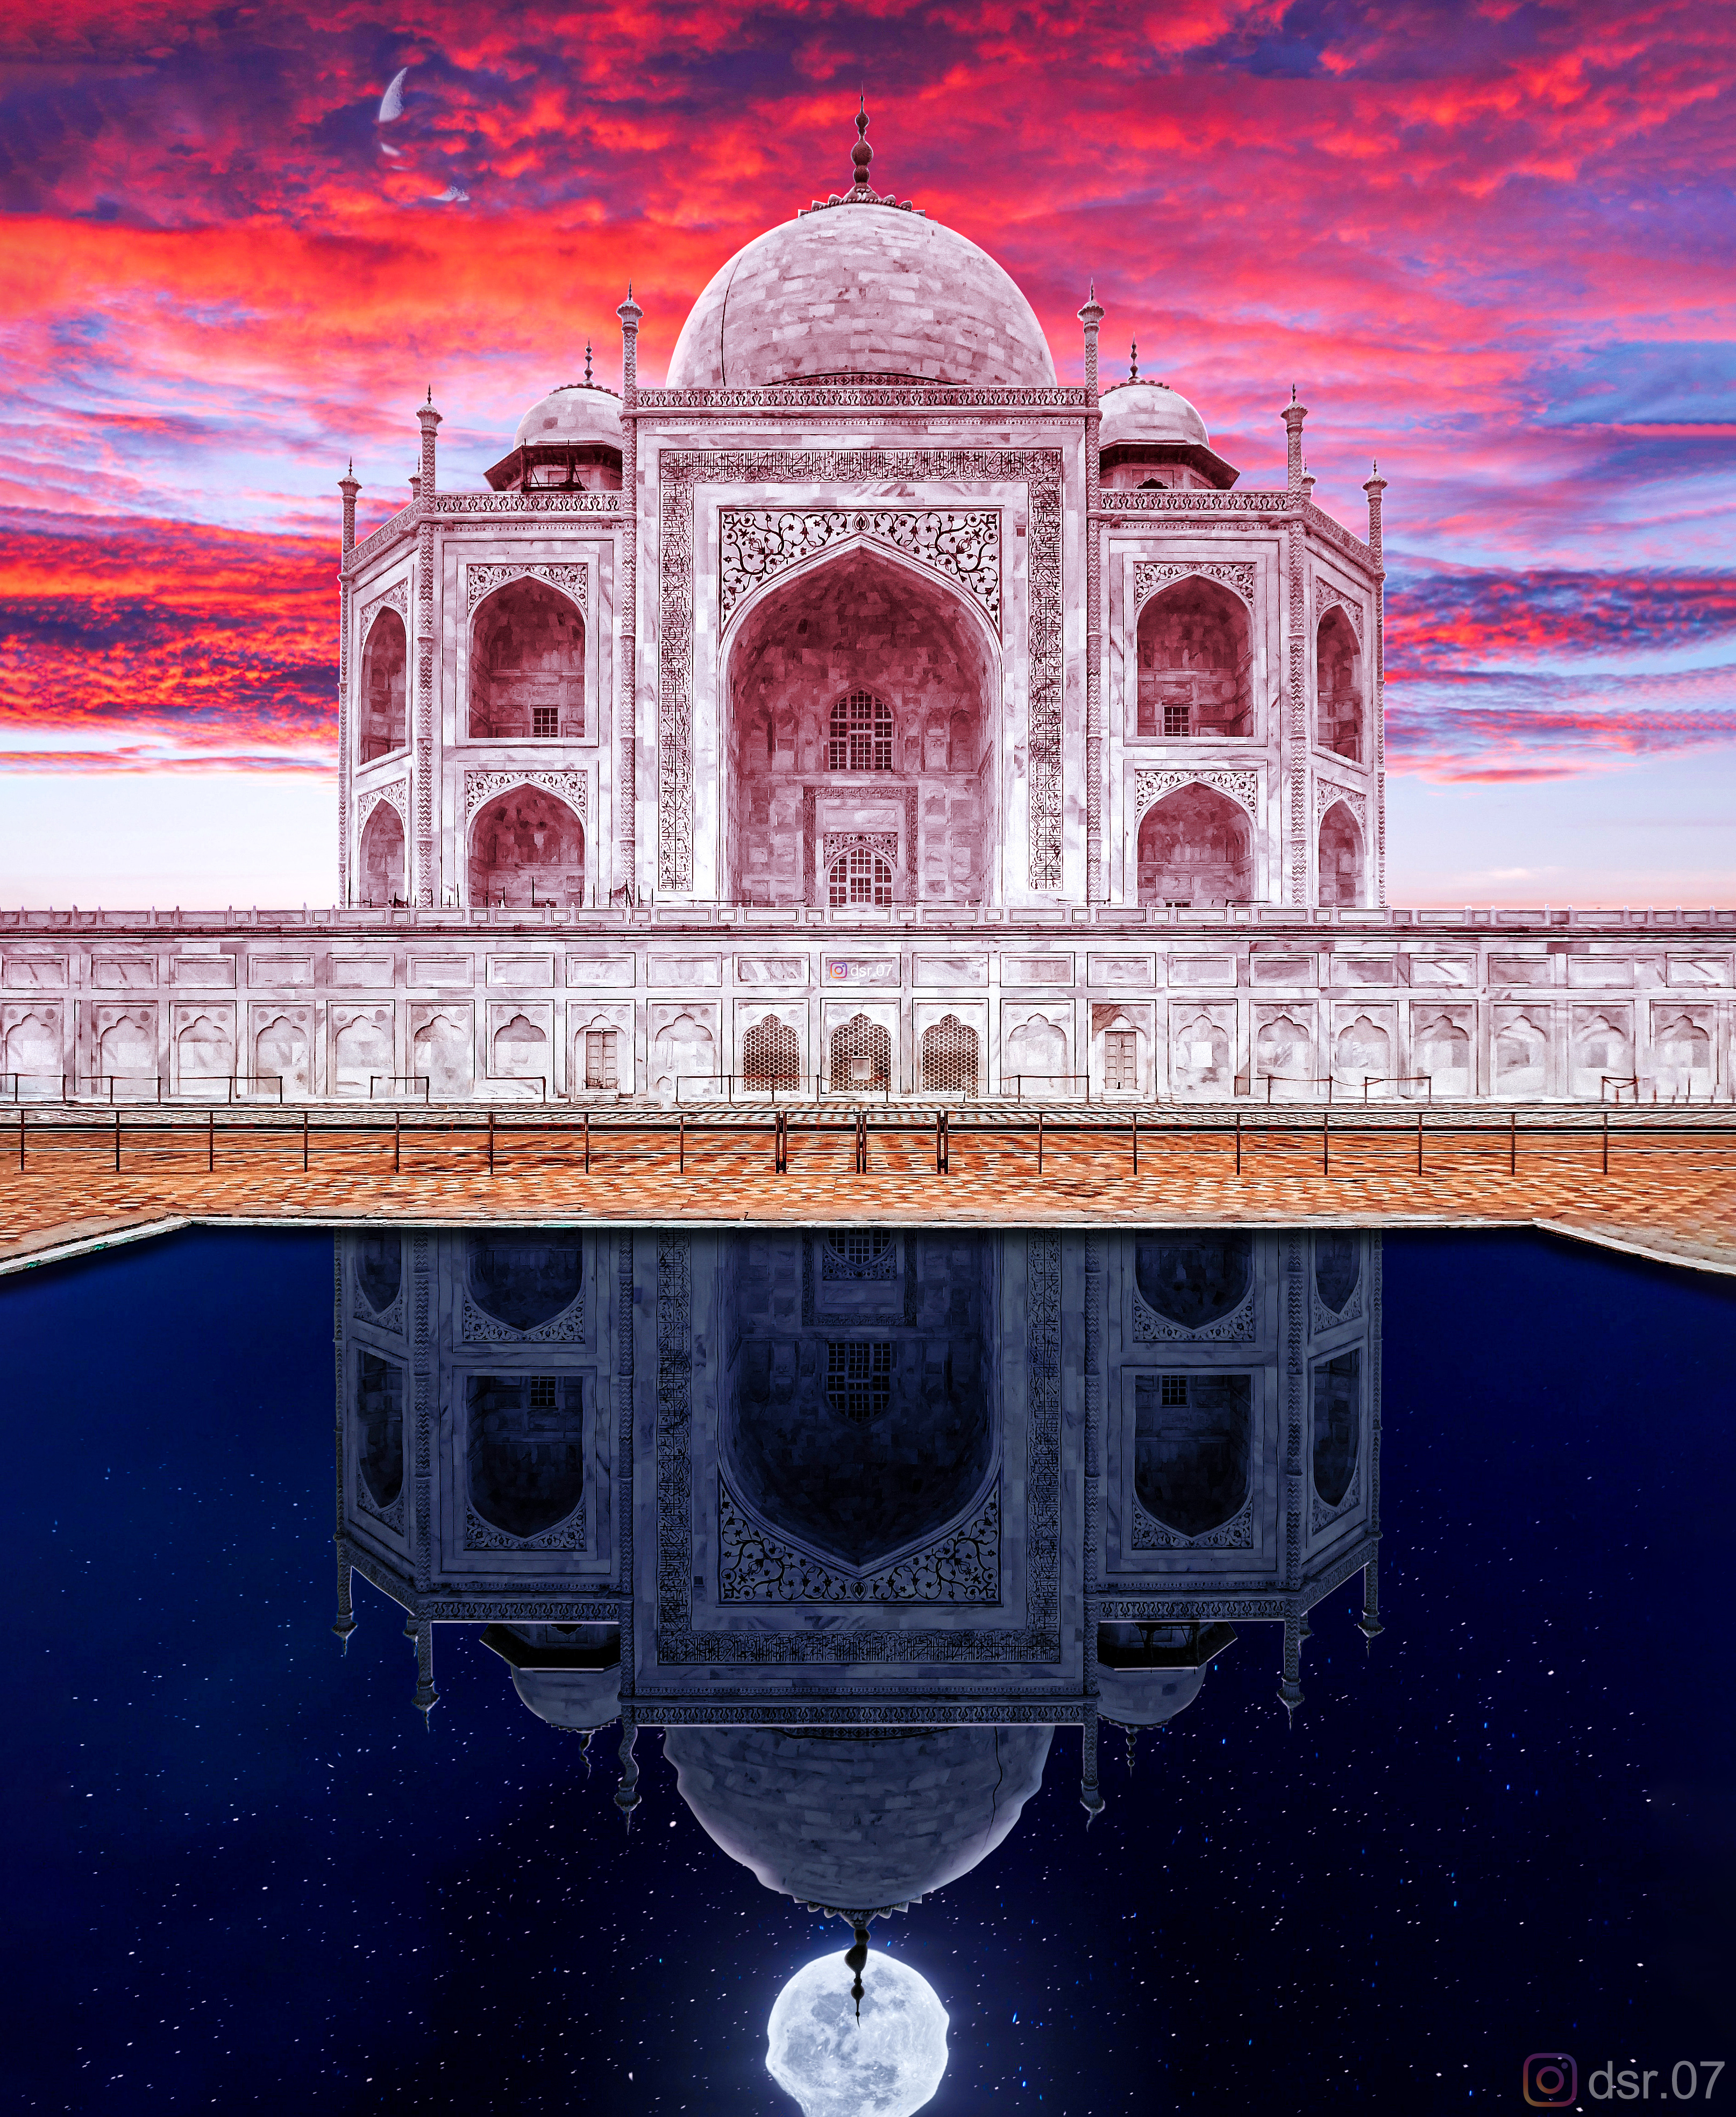 Taj Mahal India Editing Photoshop 3228x3936